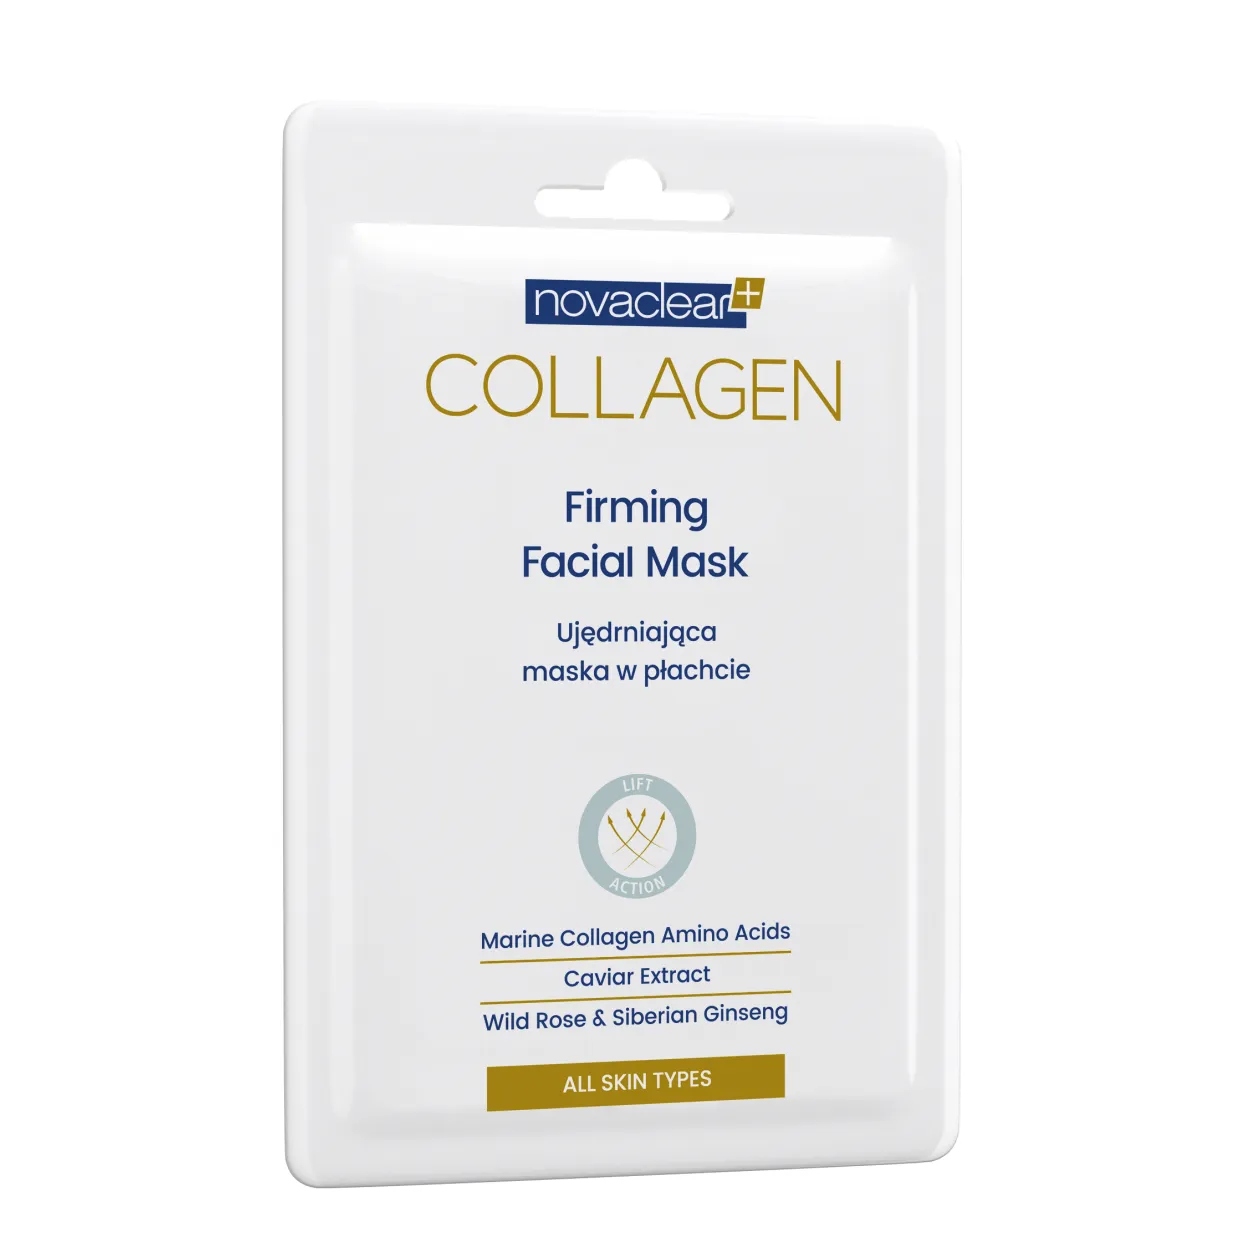 Novaclear-collagen-firming-facial-mask